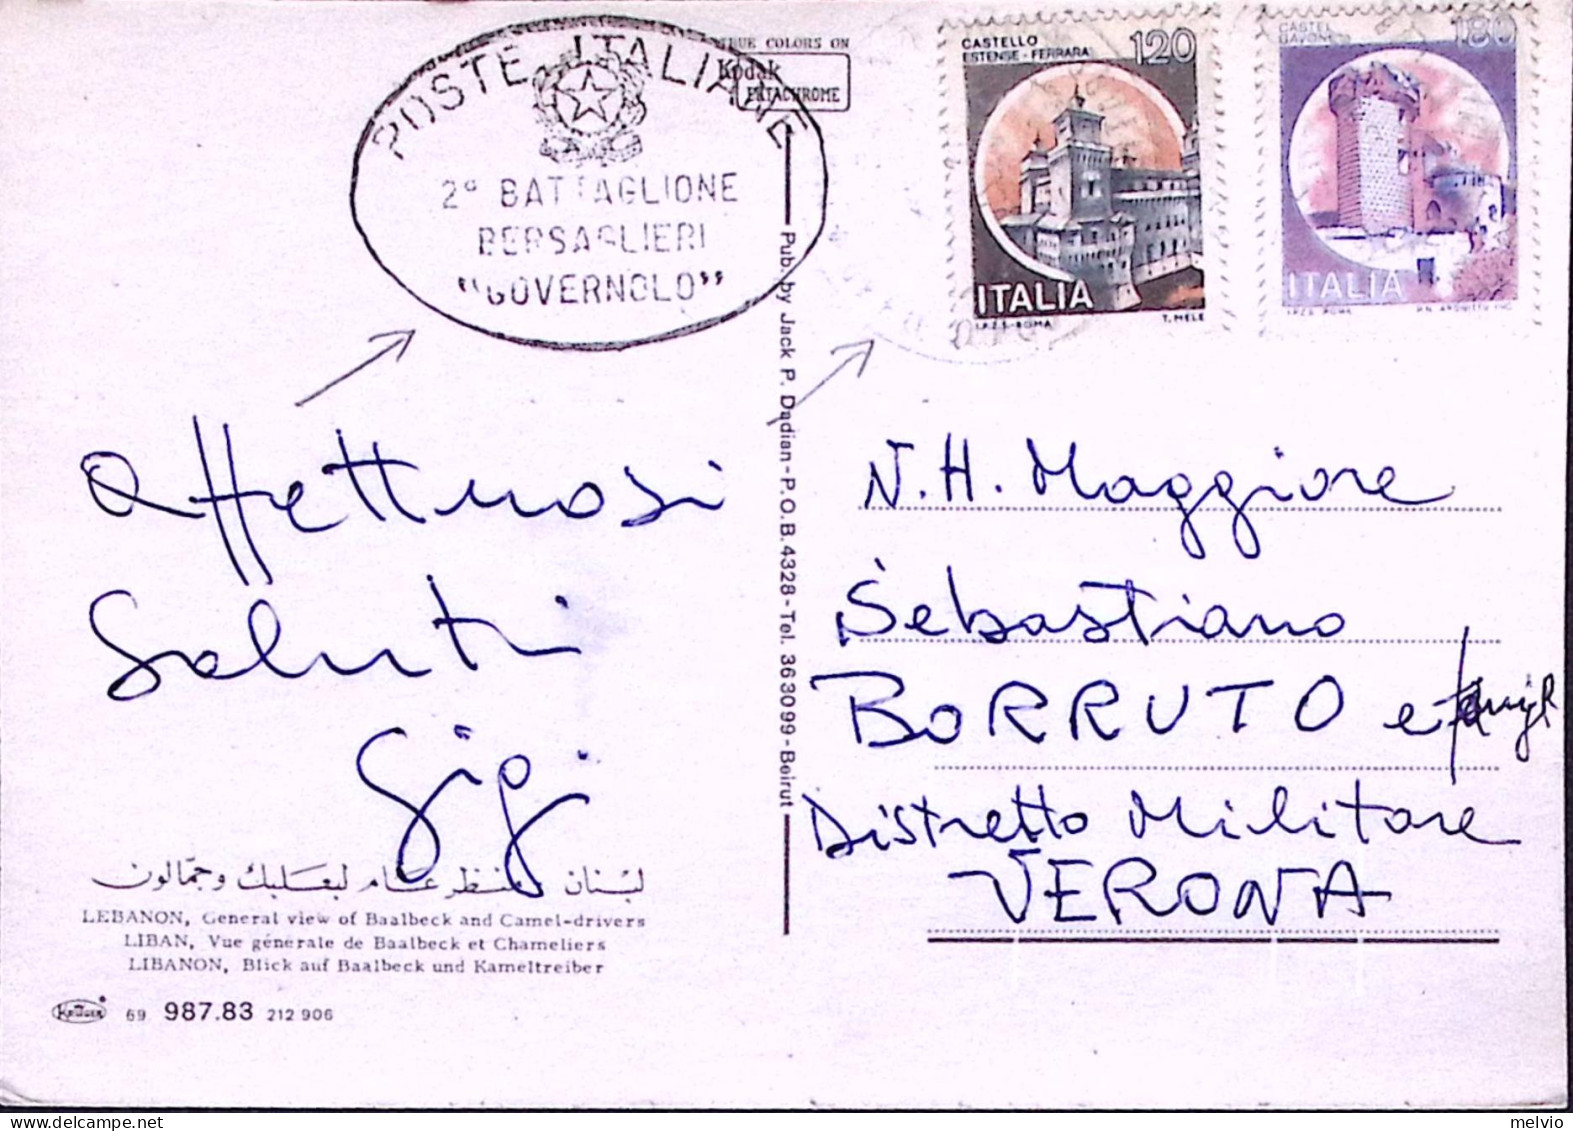 1983-POSTE ITALIANE-2 BATTAGLIONE BERSAGLIERI /GOVERNOLO/ Ovale Su Cartolina Via - Andere Kriege